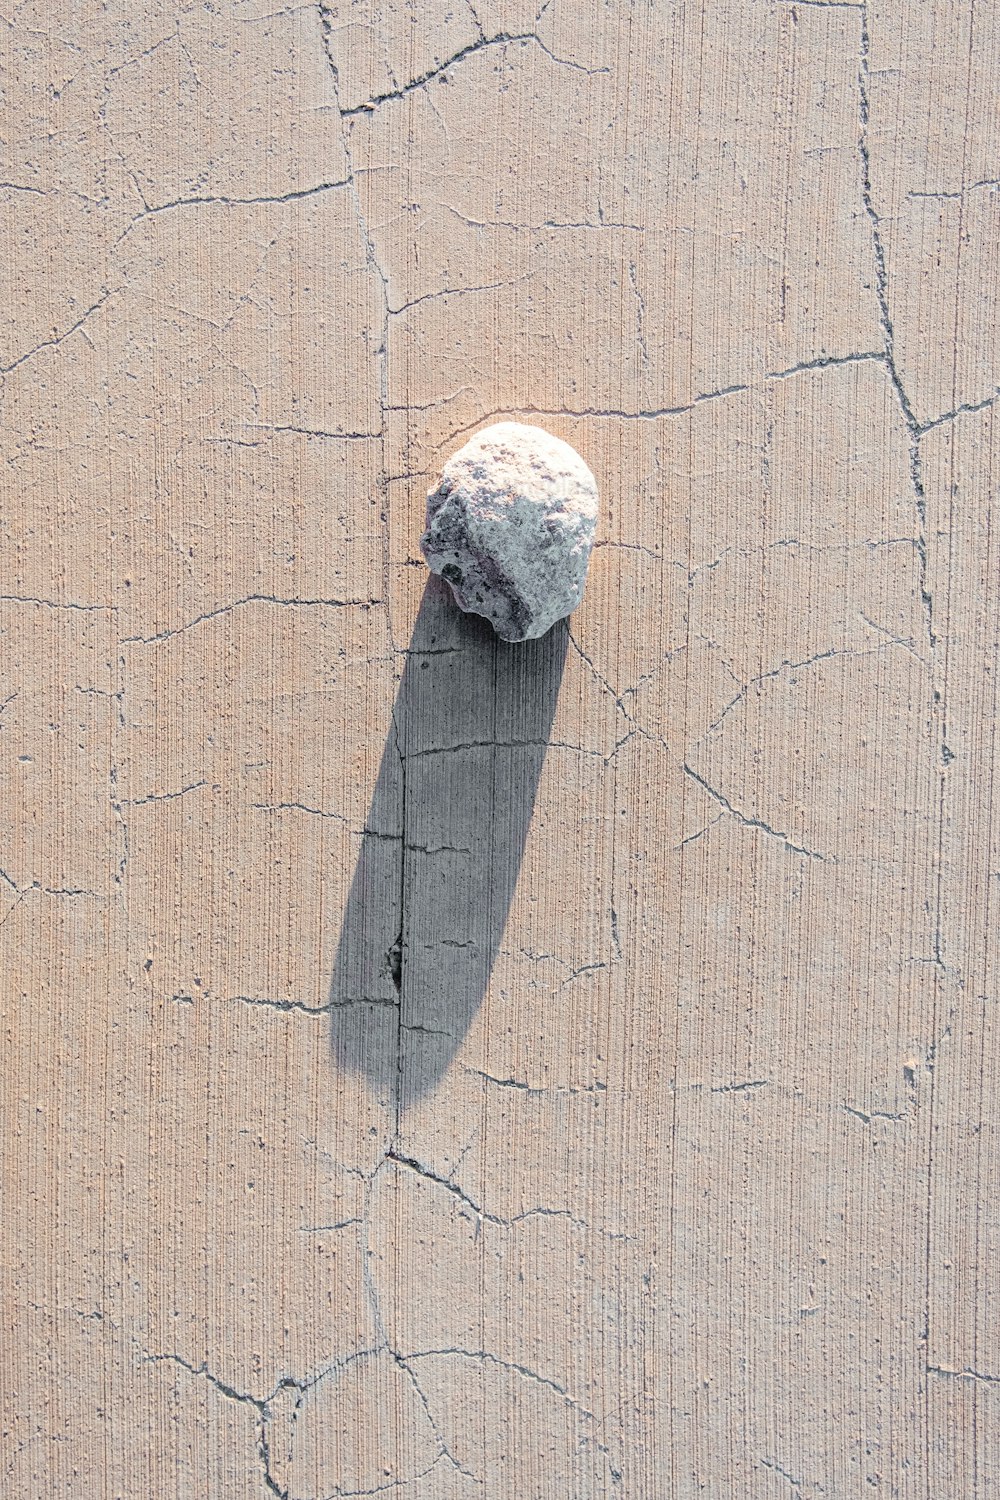 시멘트 슬래브 위에 앉아있는 바위